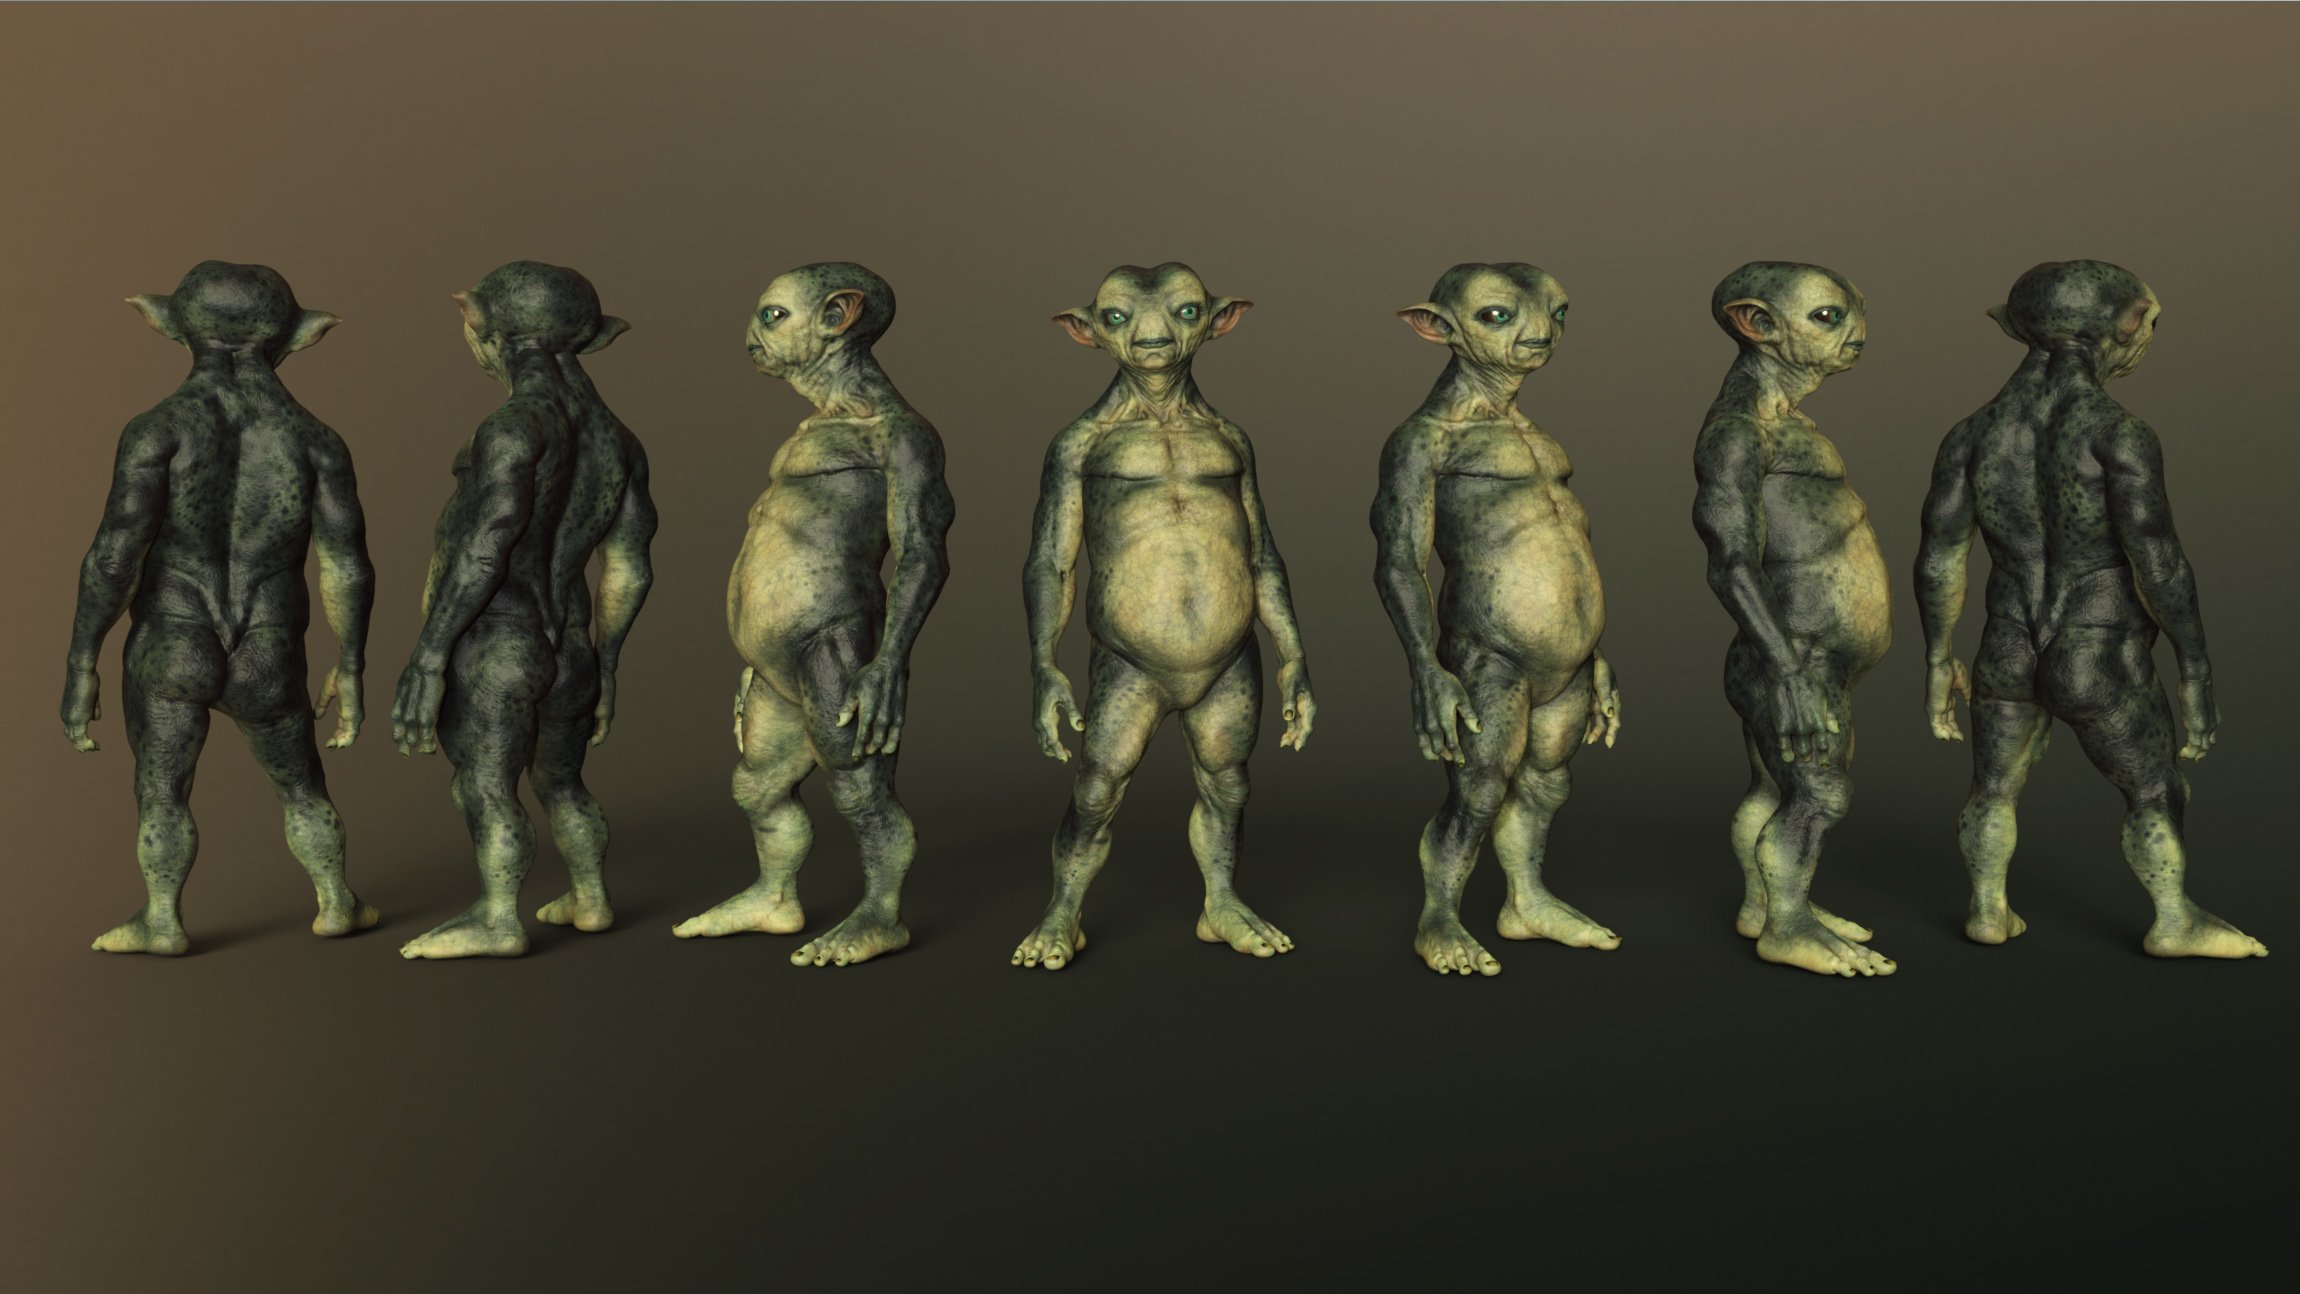 Mervin the Alien HD for Genesis 8 Male by: Josh Crockett, 3D Models by Daz 3D